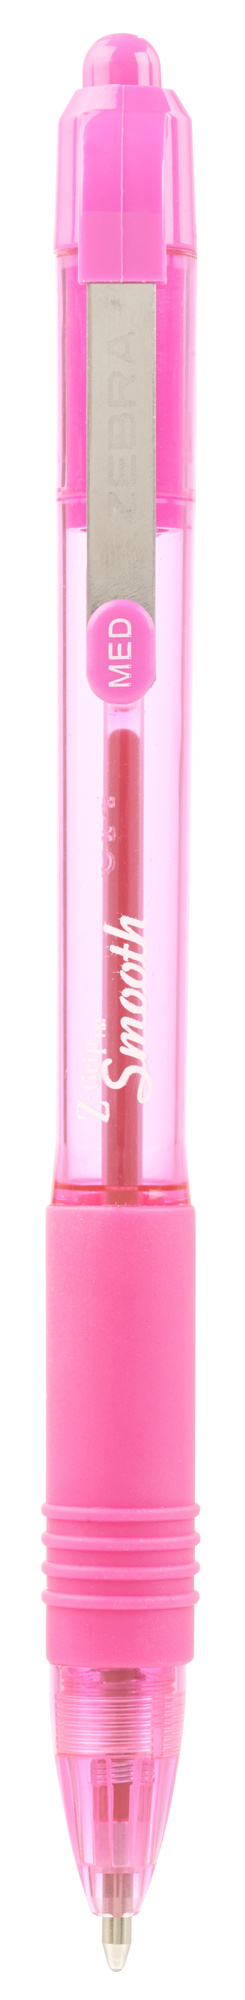 Ручка шариков. автоматическая Zebra Z-grip Smooth (22567) розовый d=1мм роз. черн. резин. манжета